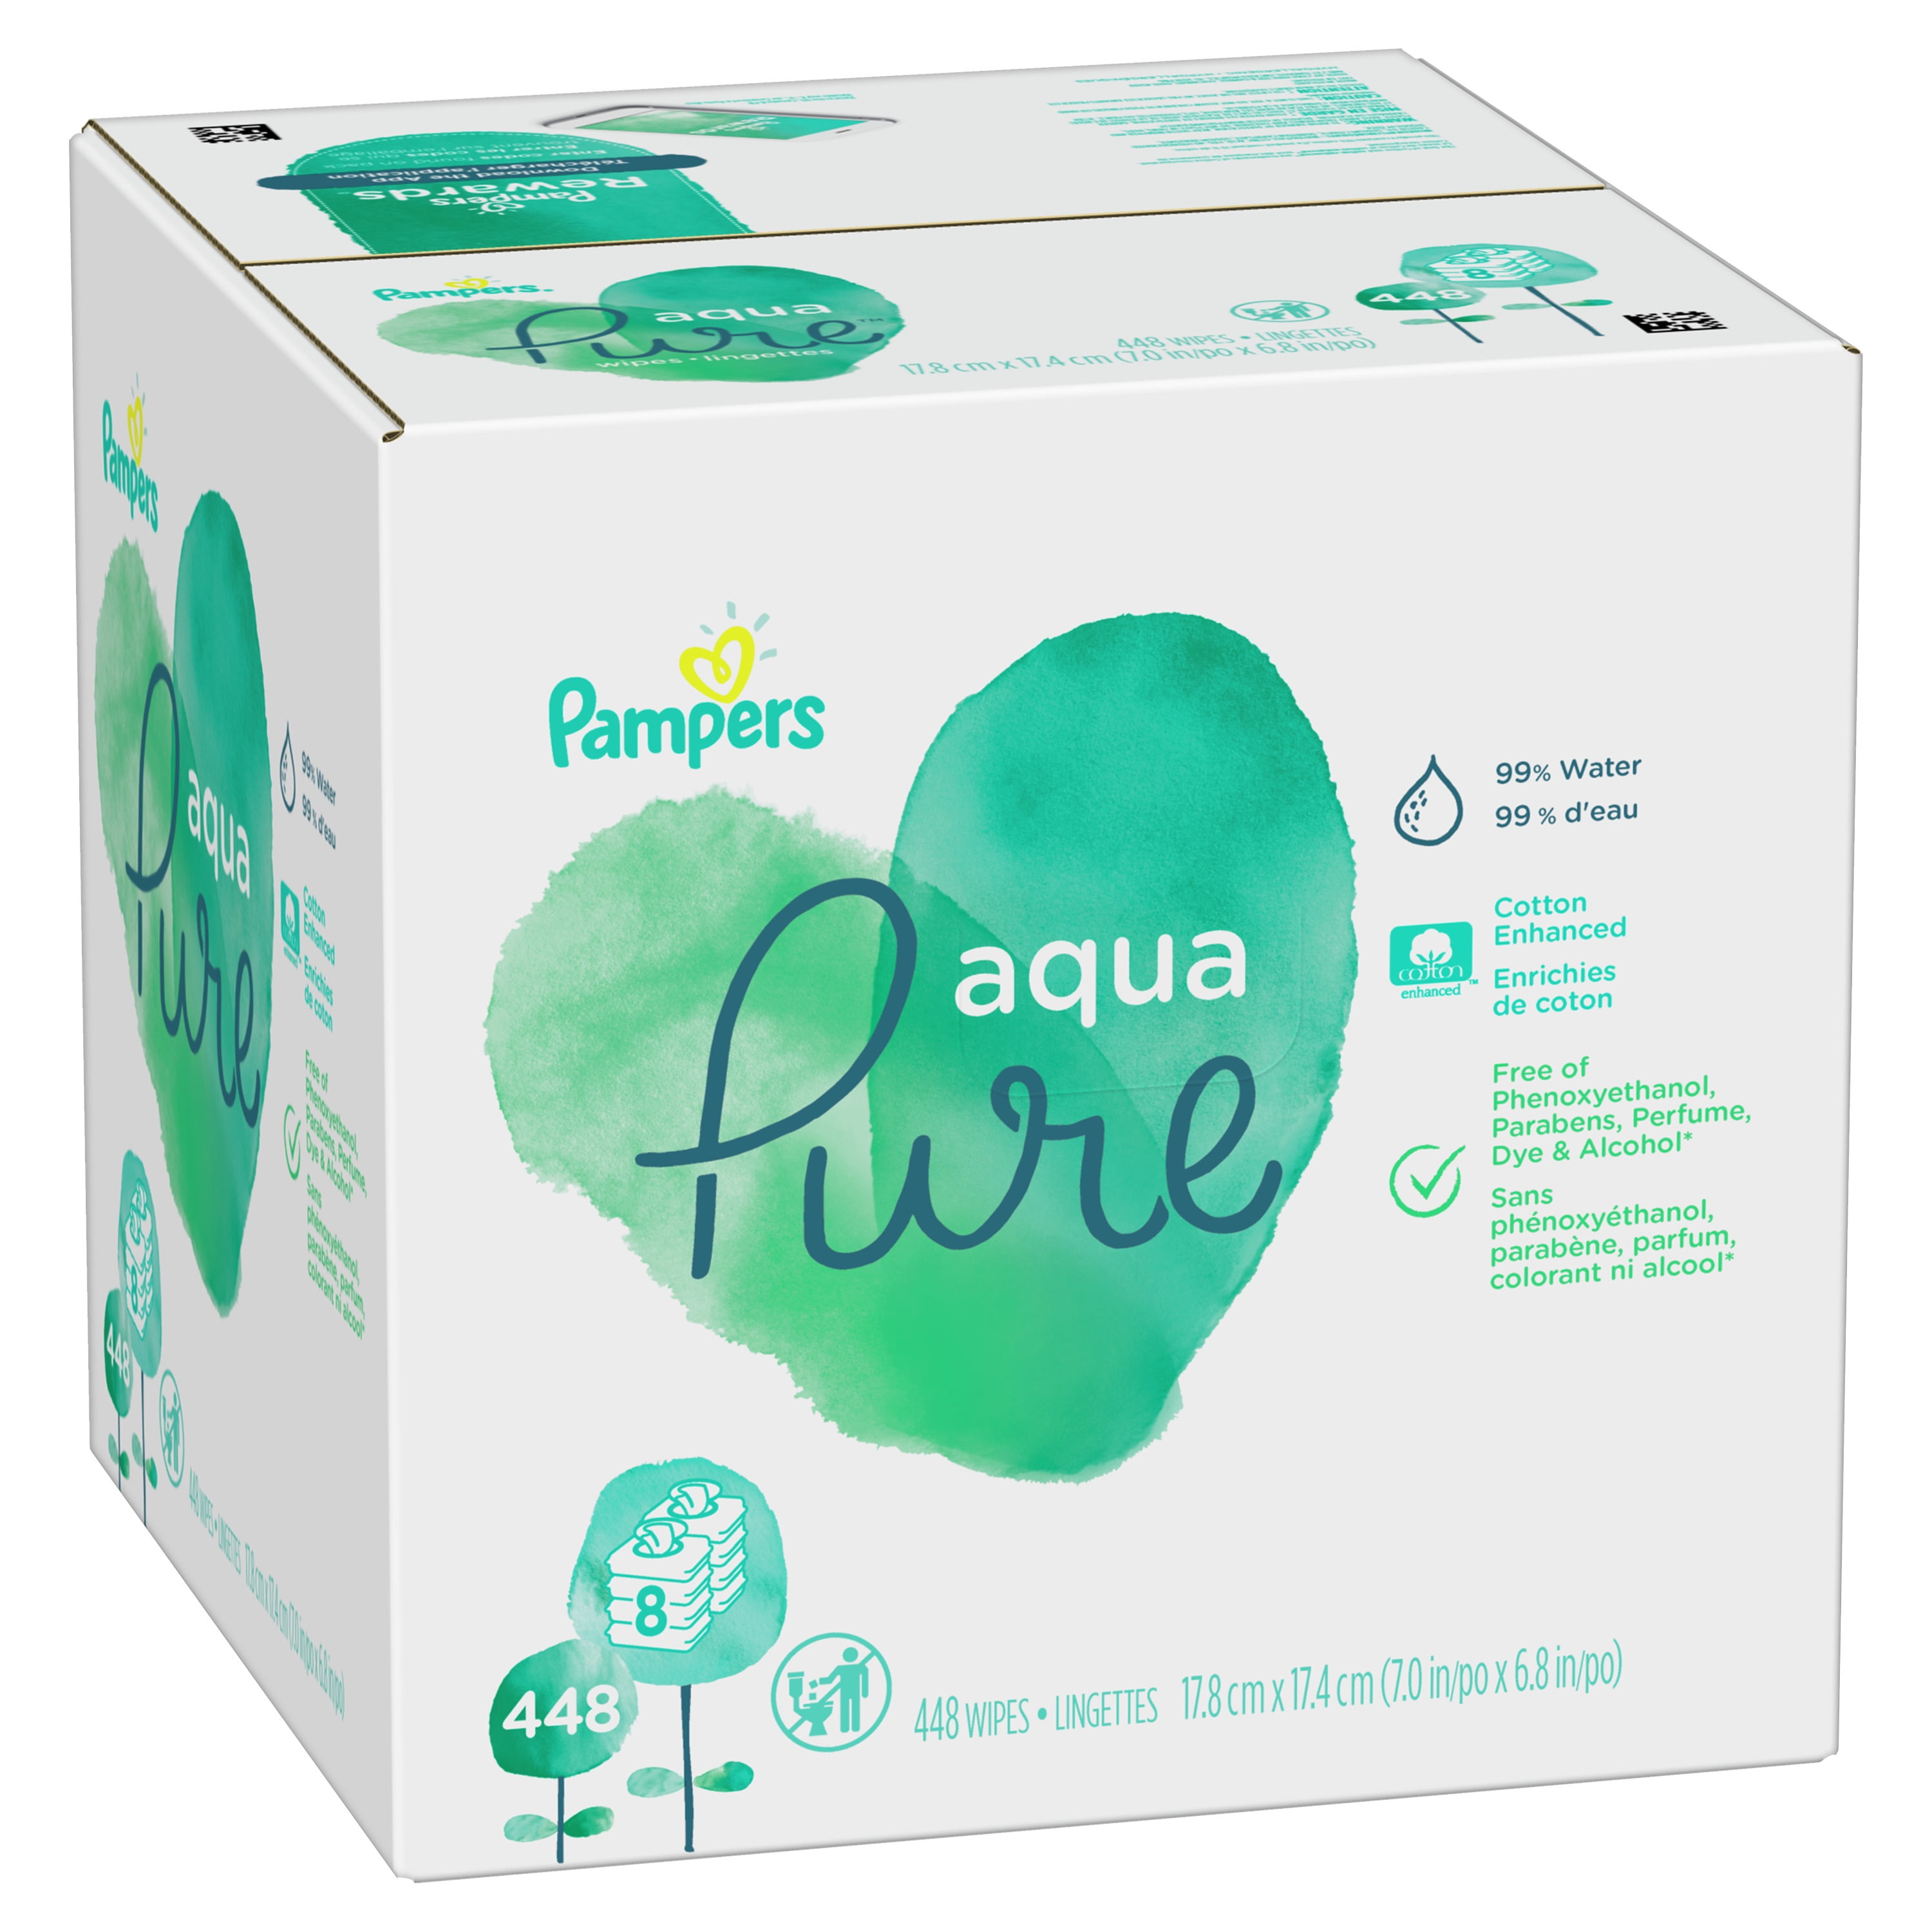  Pampers Aqua Pure Toallitas para bebés, sensitivo, con agua, 6  cajas tipo tapa emergente, 6 recambios, 1 : Todo lo demás